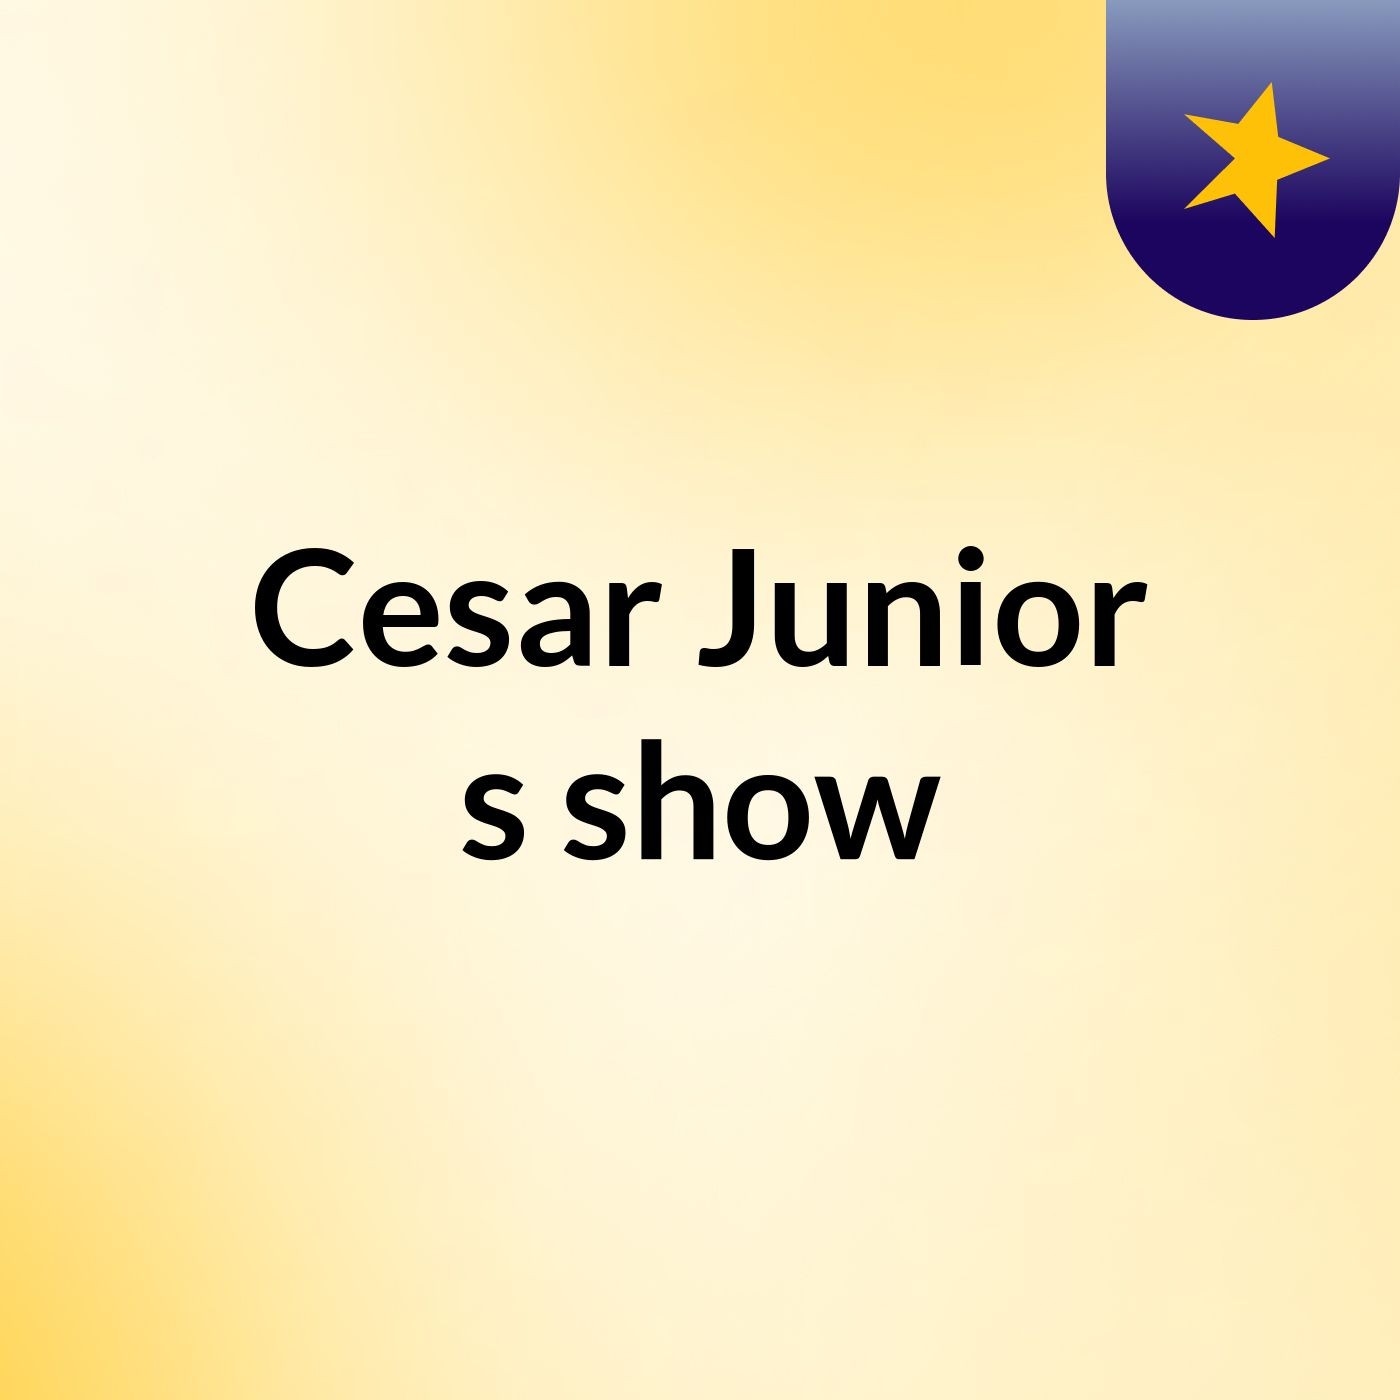 Cesar Junior's show